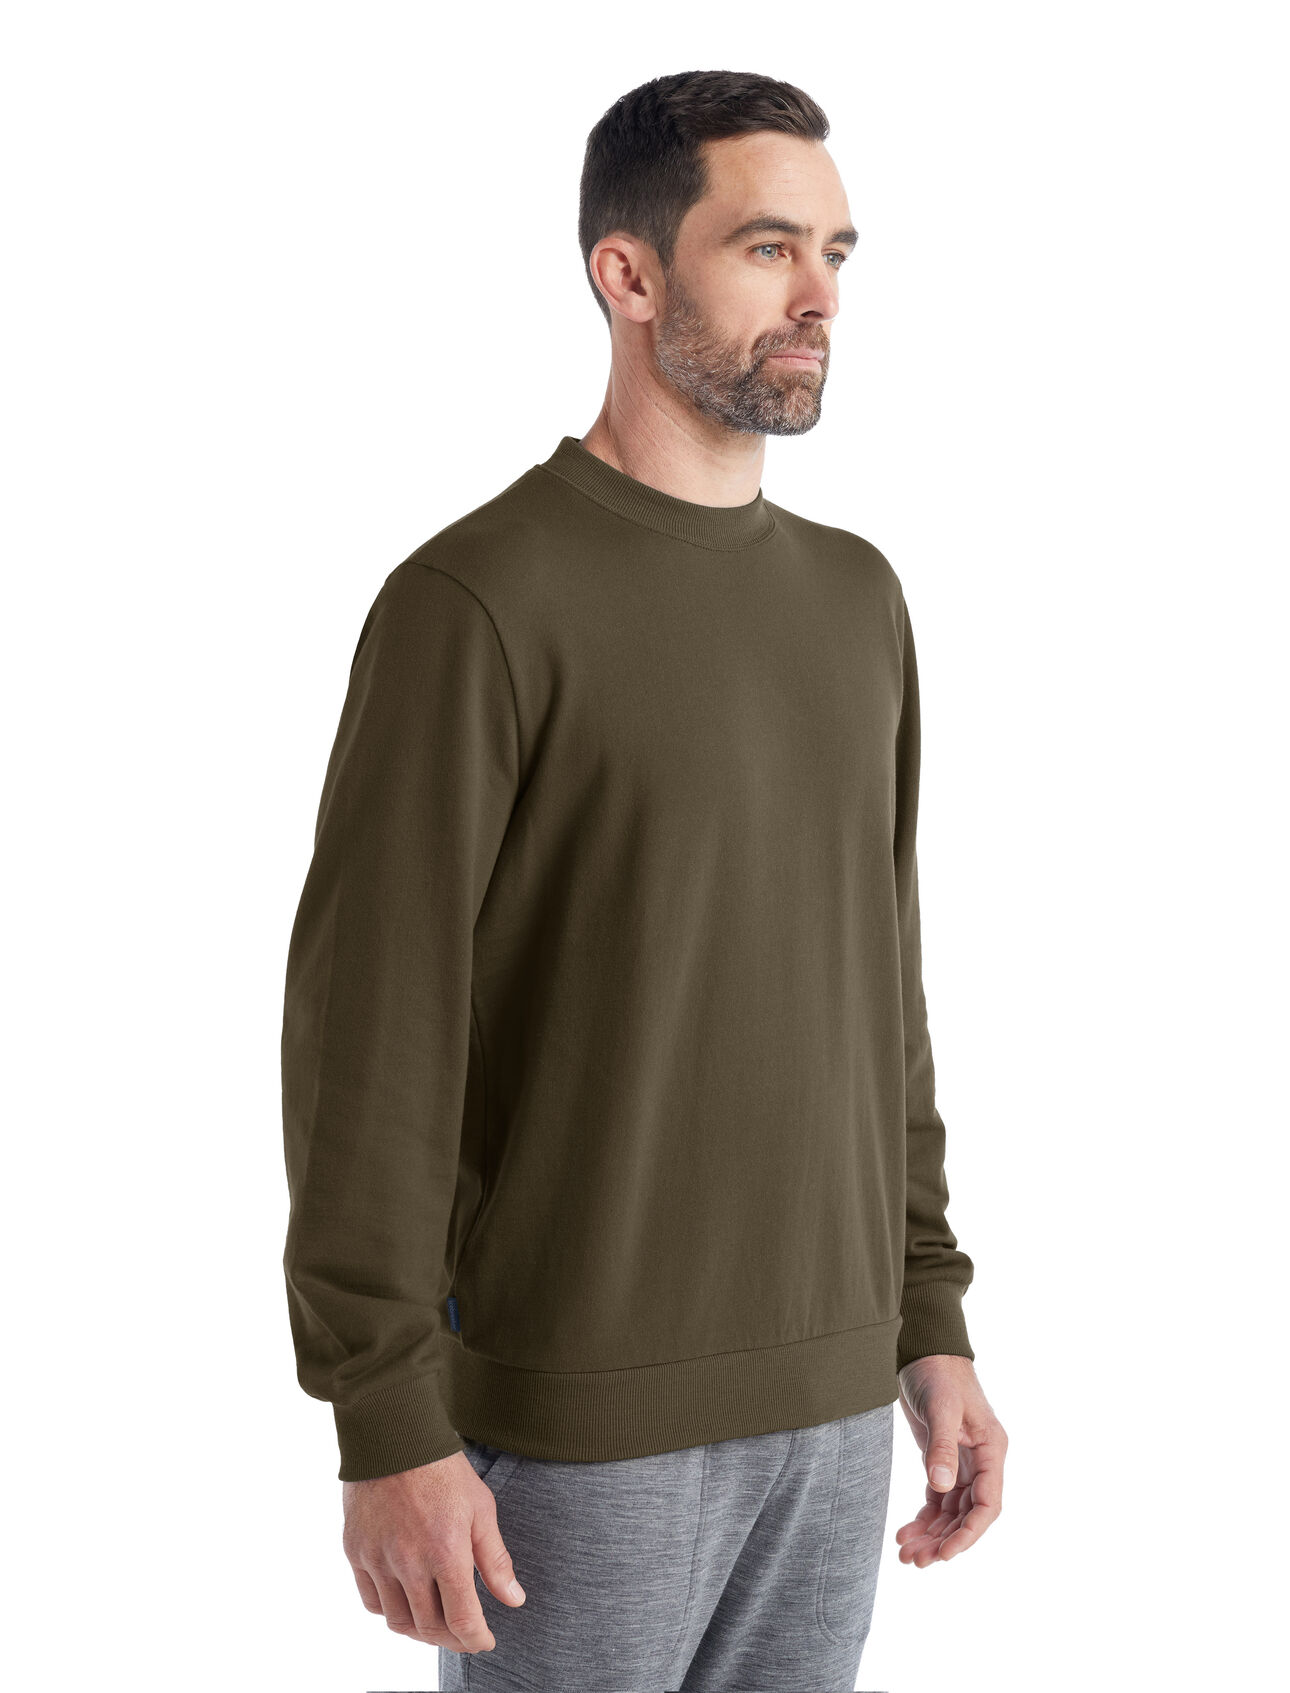 Heren Shifter sweatshirt met lange mouwen van merinowol Het Shifter Sweatshirt is een klassieke en stijlvolle top, gemaakt van zachte, comfortabele terry stof van 100% merinowol. Het sweatshirt met lange mouwen is een veelzijdige layer voor elke dag.